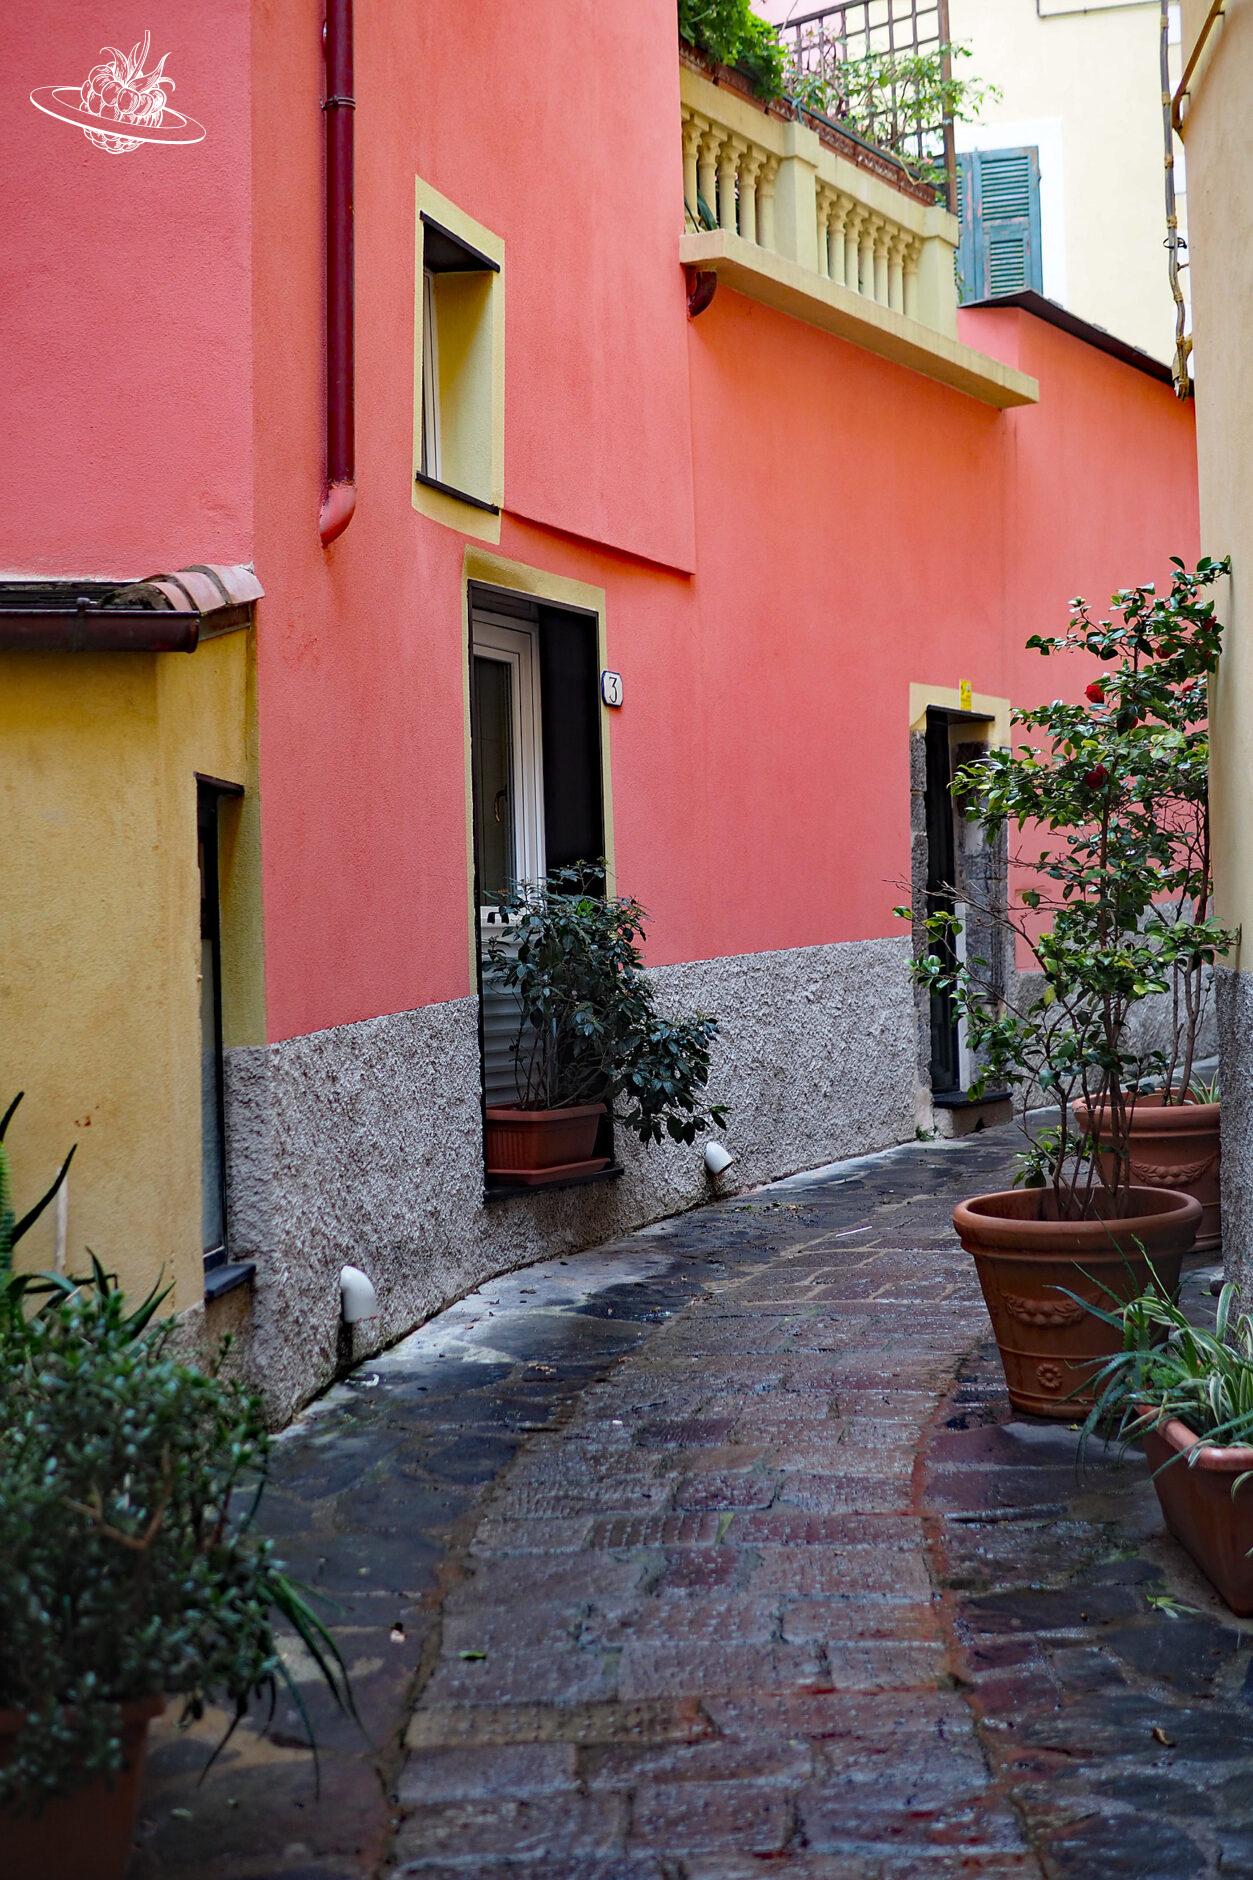 farbige Gasse in einem italienischen Dorf